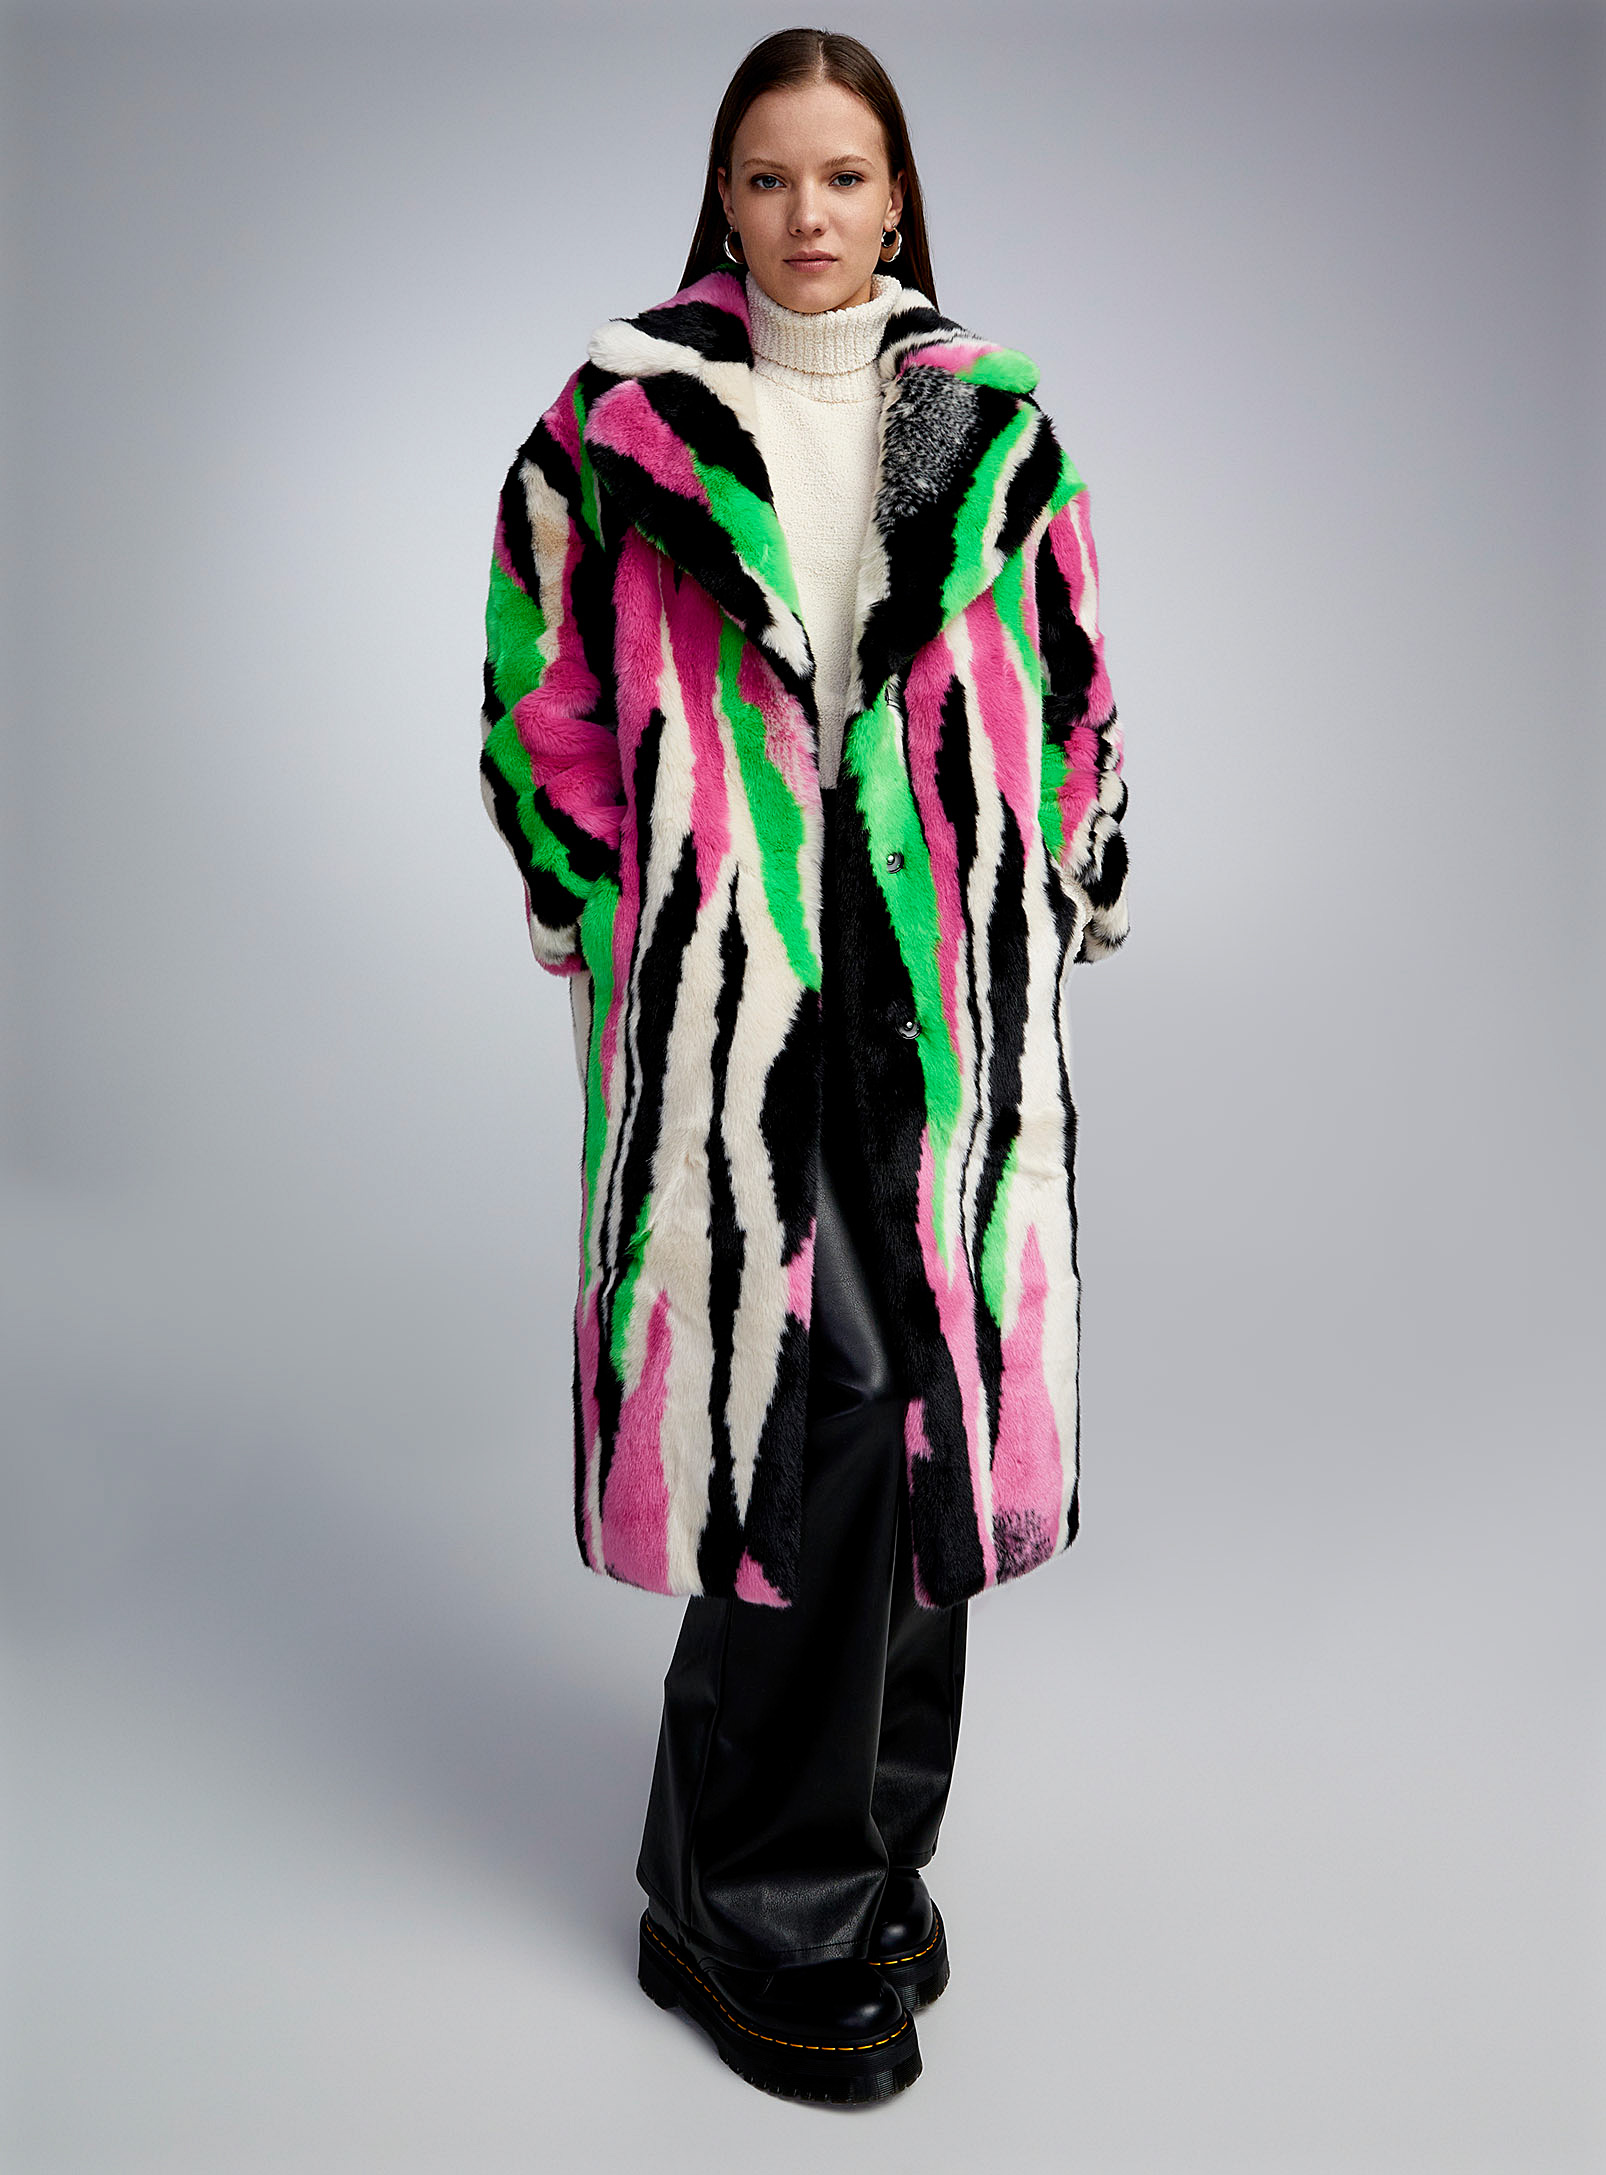 Jakke - Women's Long multicolored stripe faux fur coat